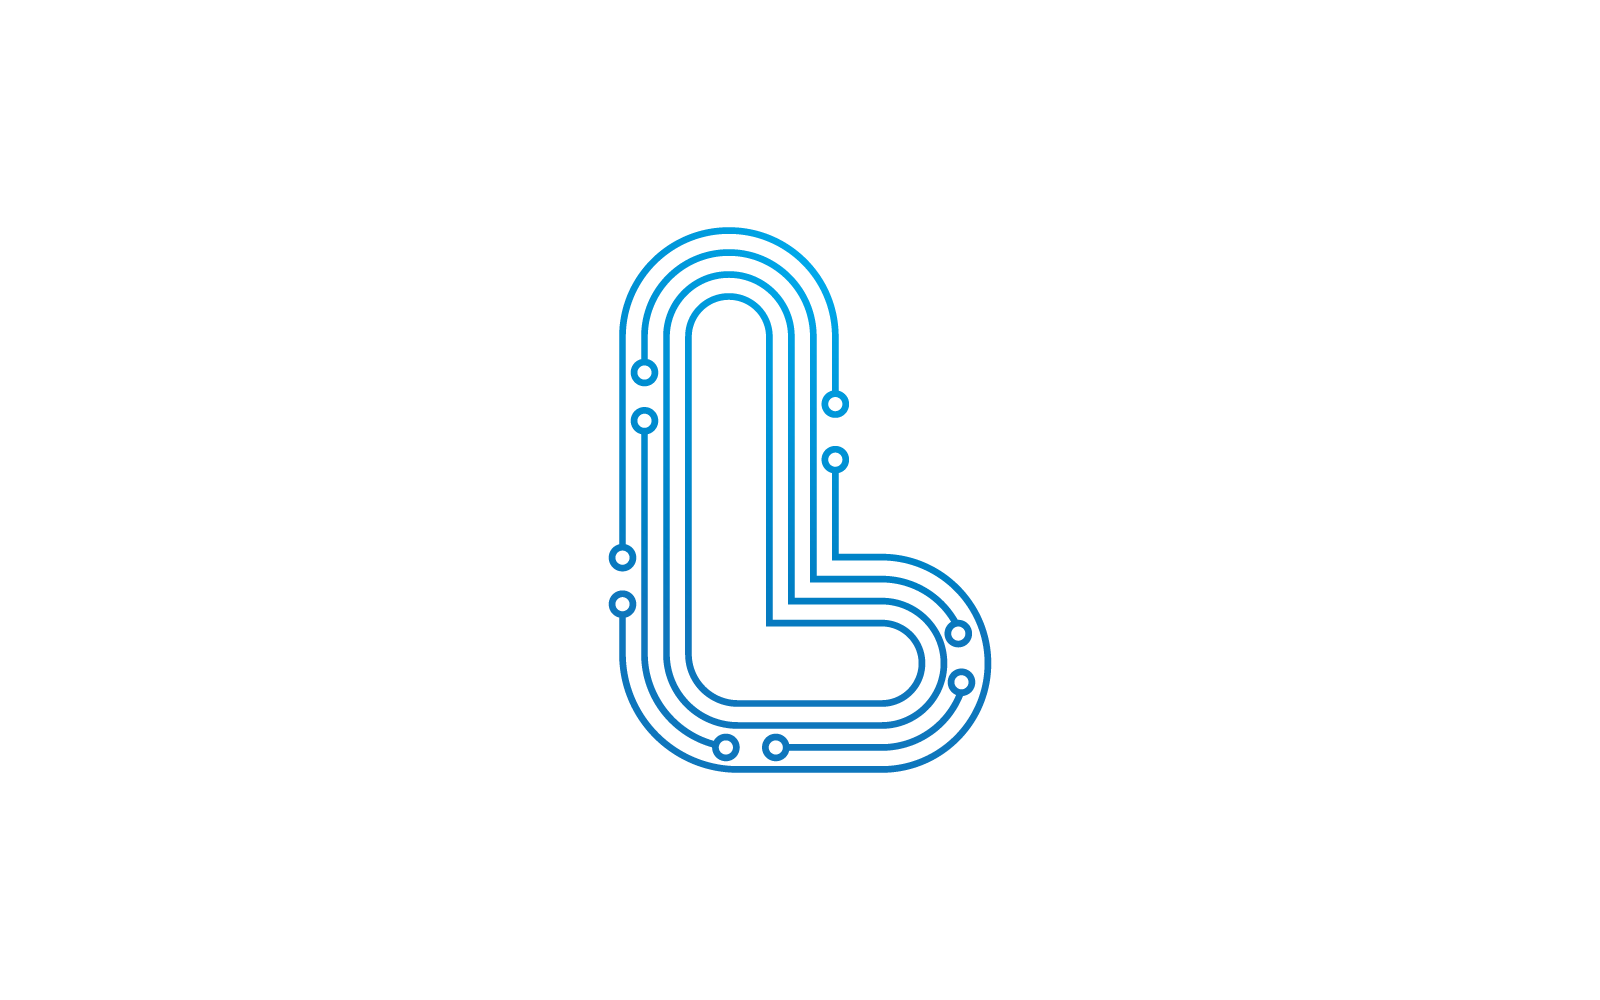 L 首字母电路技术插图徽标矢量模板